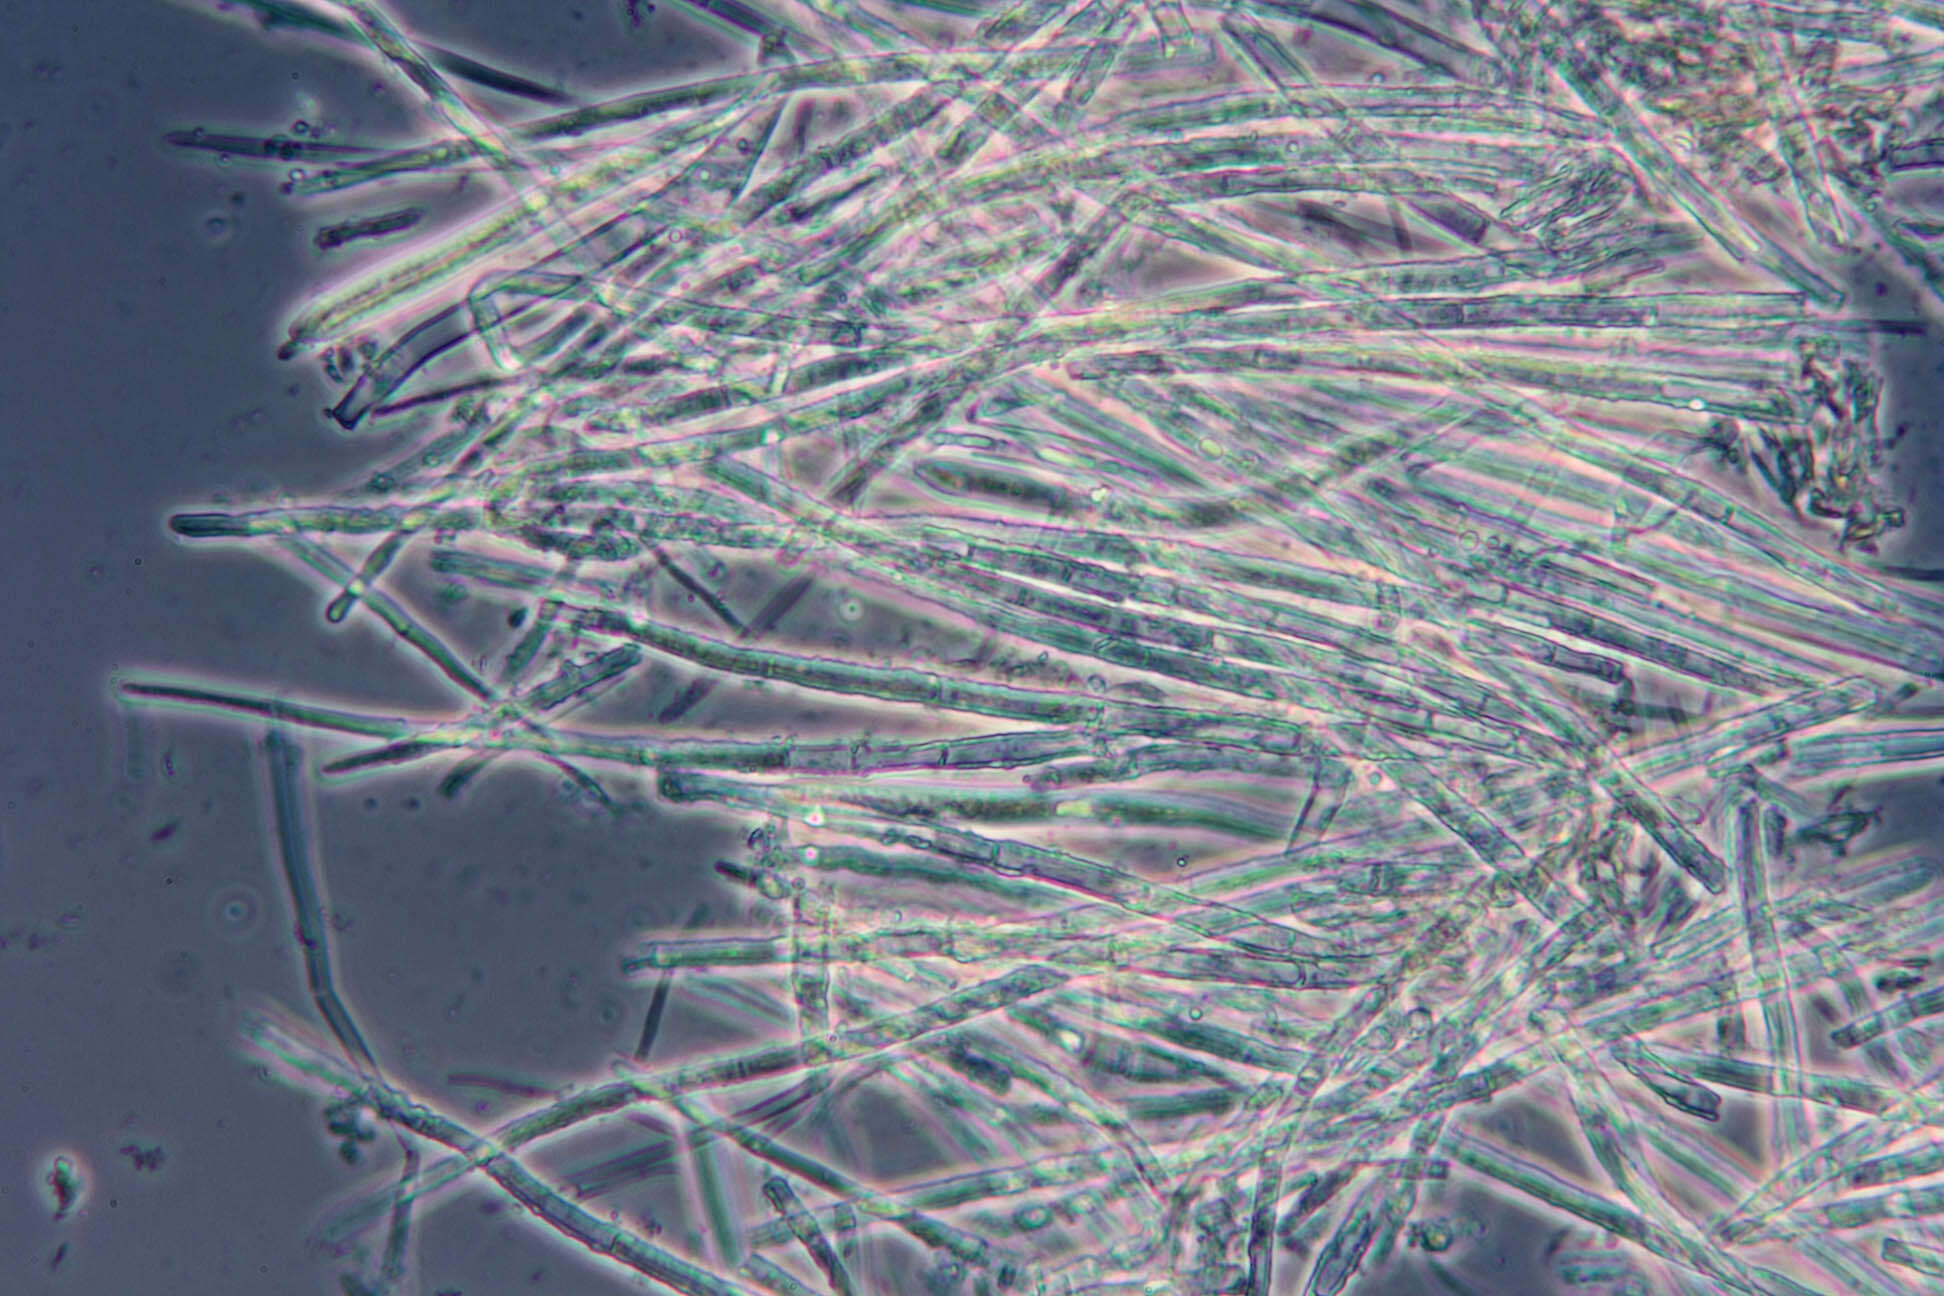 Image of Belonidium sulphureum (Fuckel) Raitv. 1970